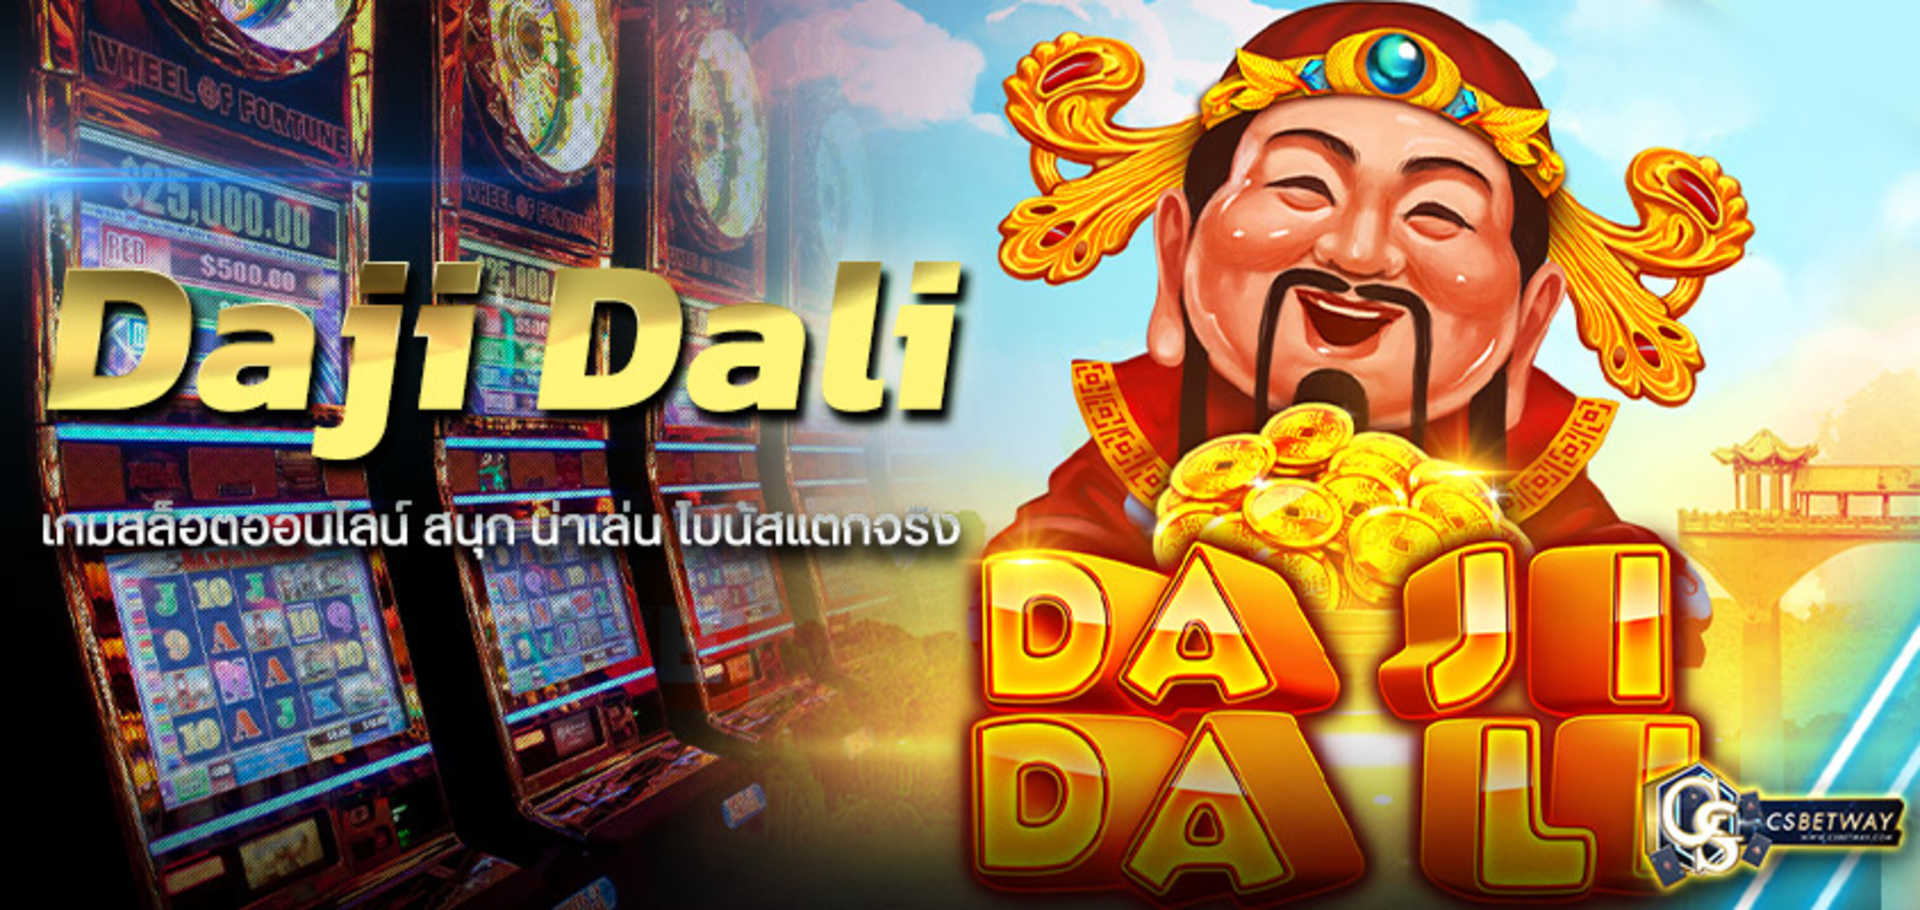 Daji Dali ทางเข้าเล่น สล็อตออนไลน์ สล็อตแตกง่าย